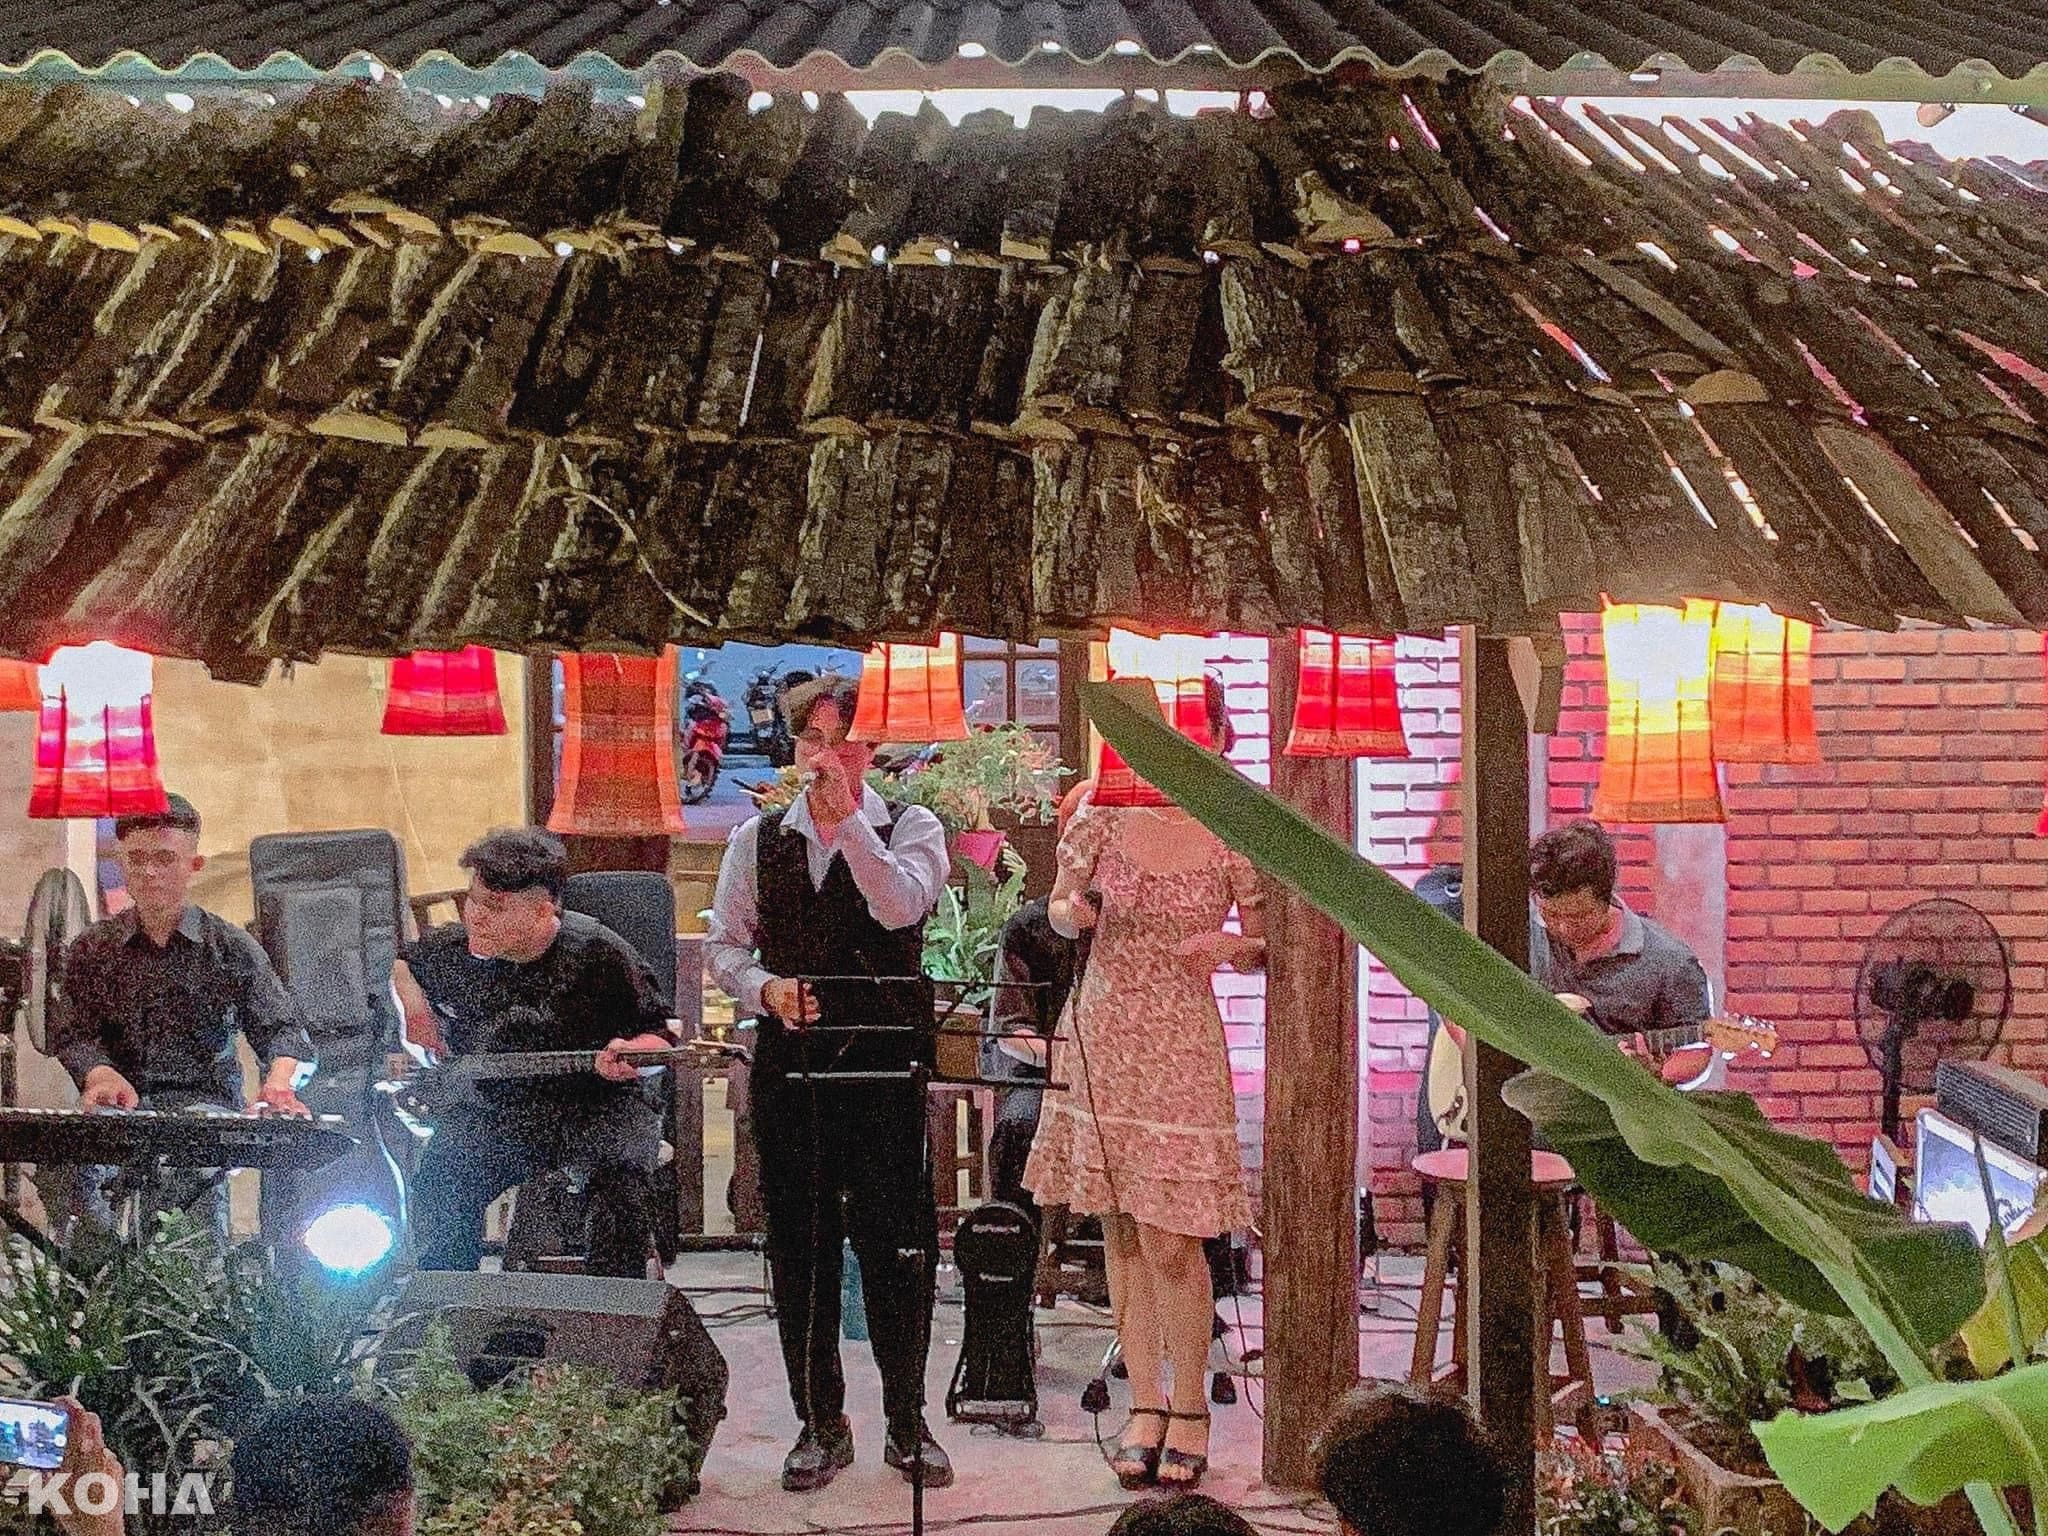 【KOHA Food 美食】摩洛哥風格MIX越南風情！峴港創意咖啡廳「Cửa Ngõ Café」，民族服飾出租、駐唱表演、兒童玩樂區…應有盡有！